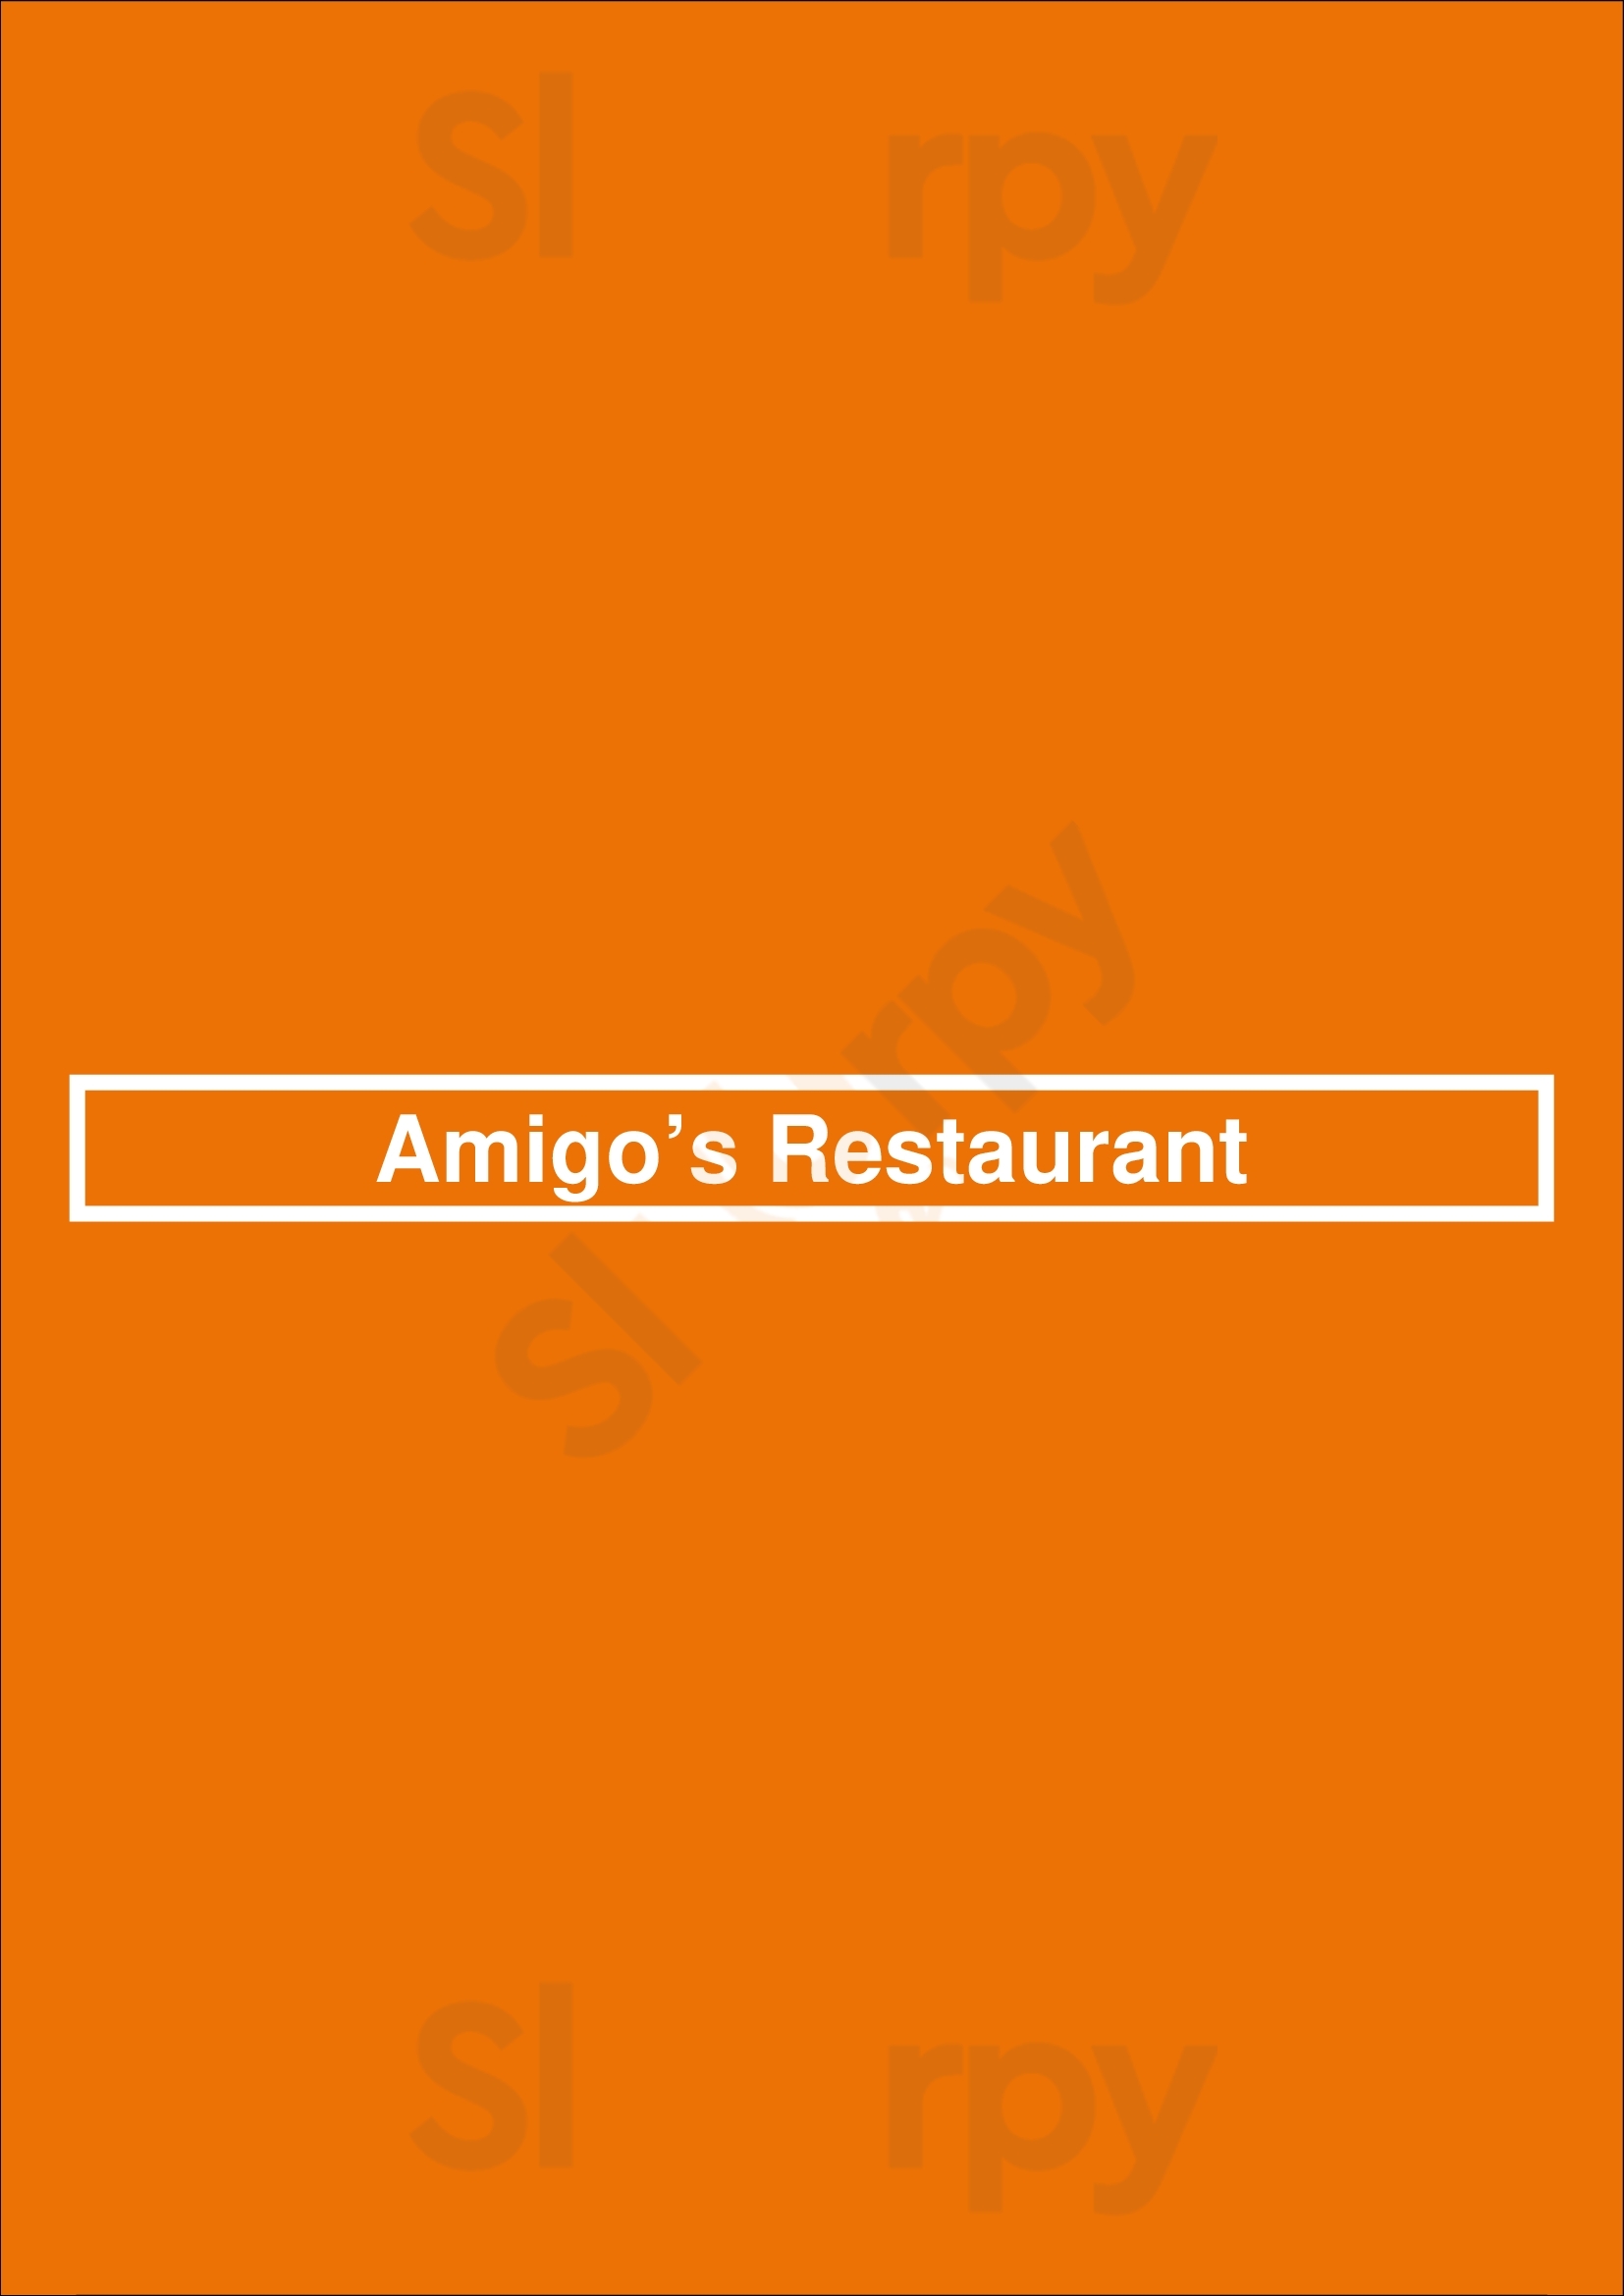 Amigo’s Restaurant Pasadena Menu - 1